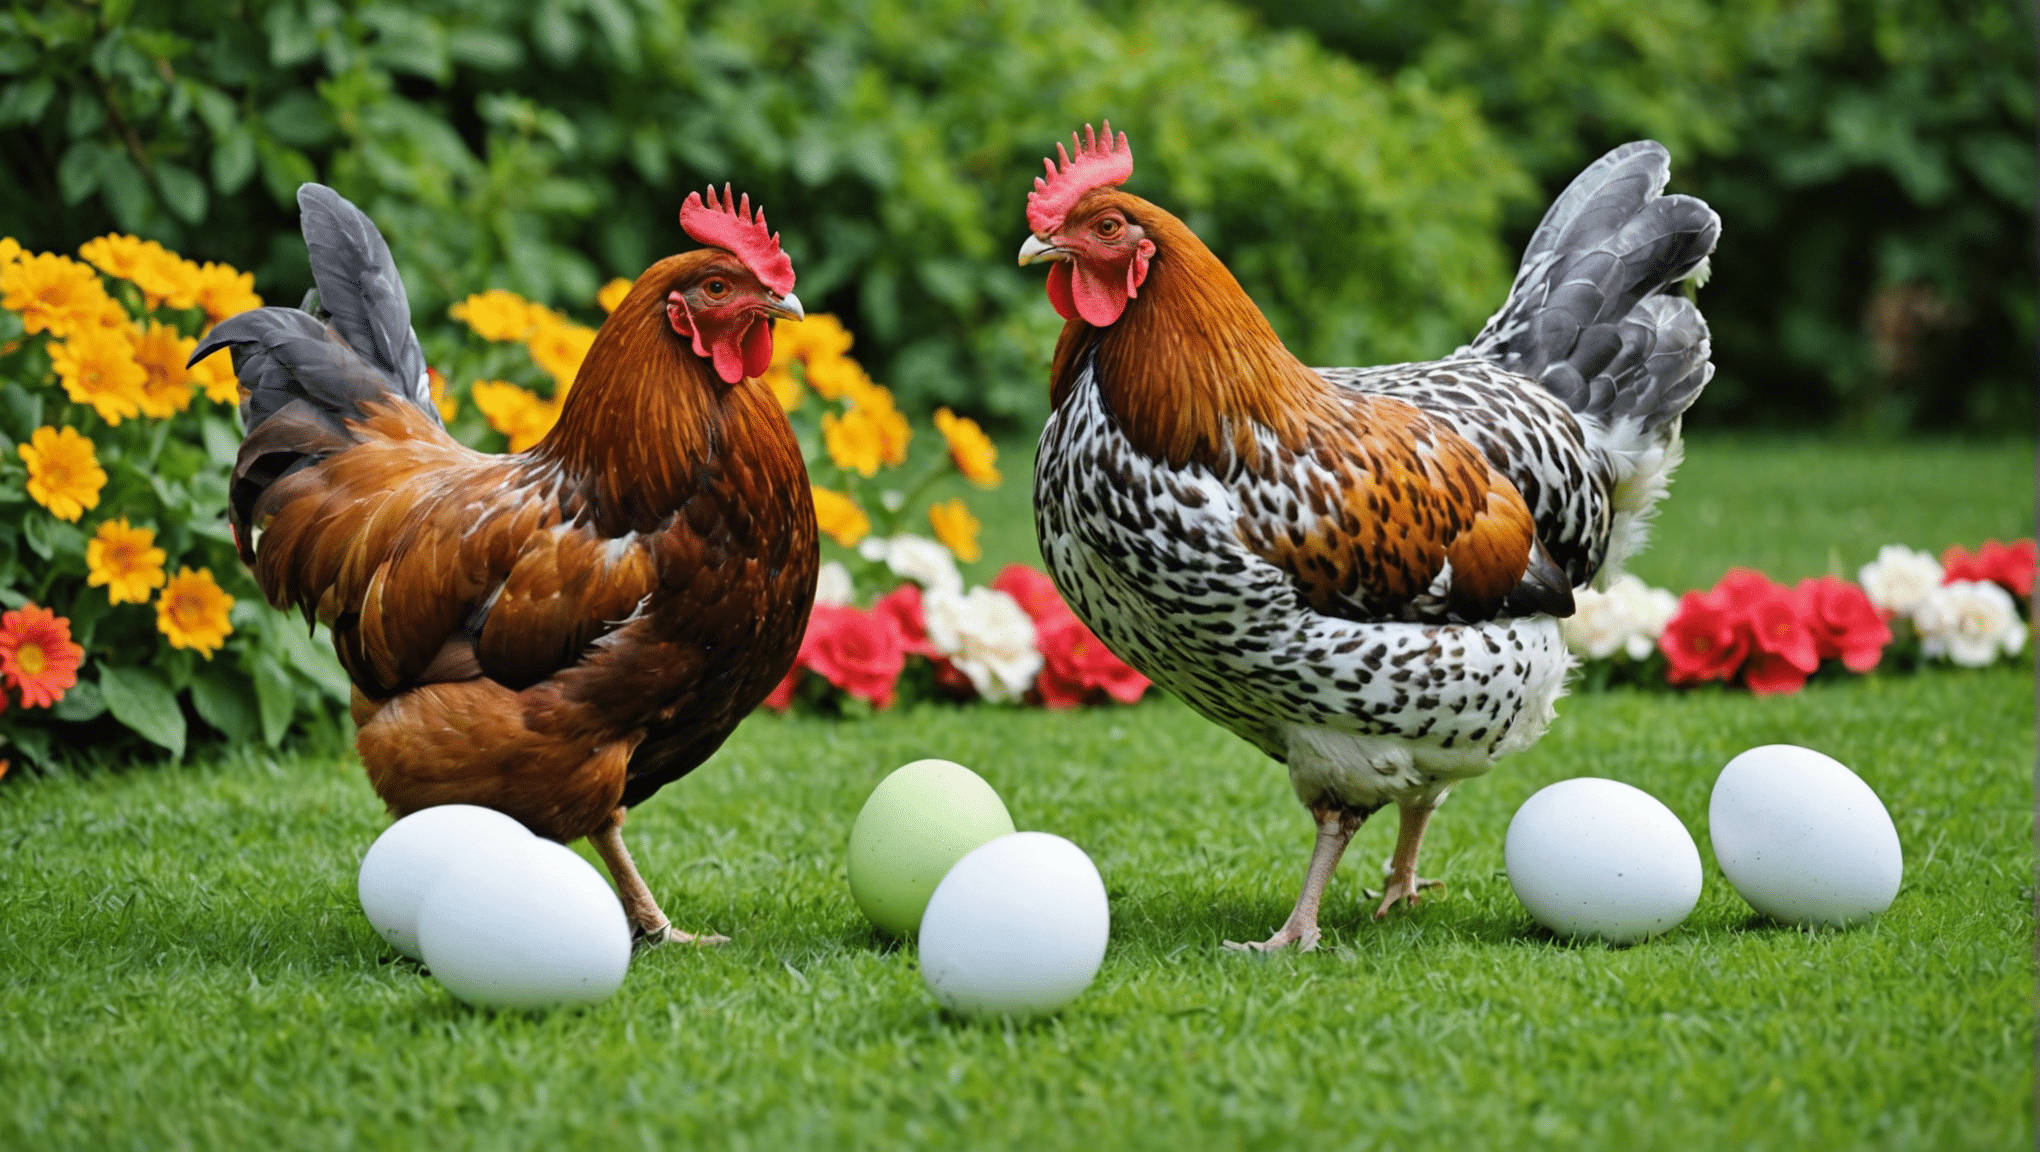 lär dig om tidpunkten för äggläggning för olika hönsraser och deras unika mönster i äggproduktion.